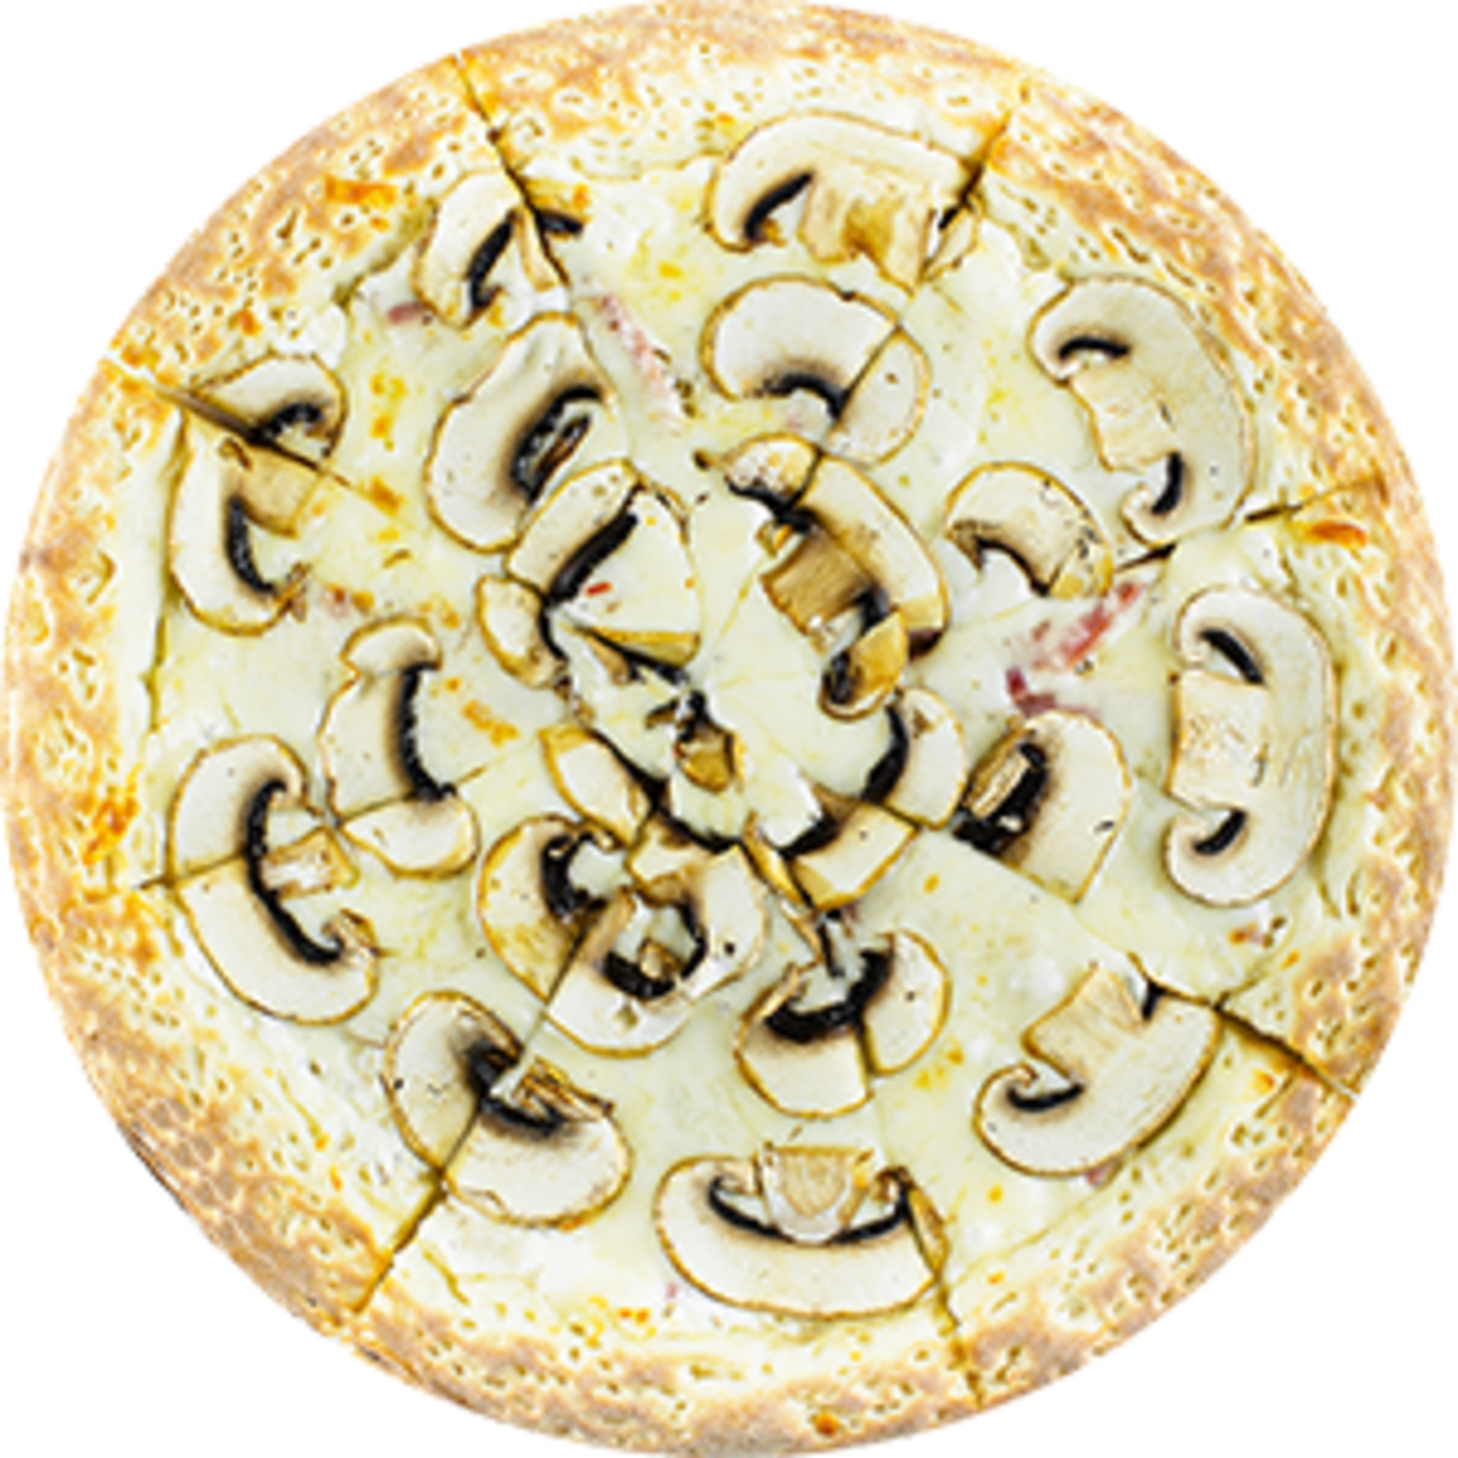 грибная пицца калорийность на 100 грамм фото 98